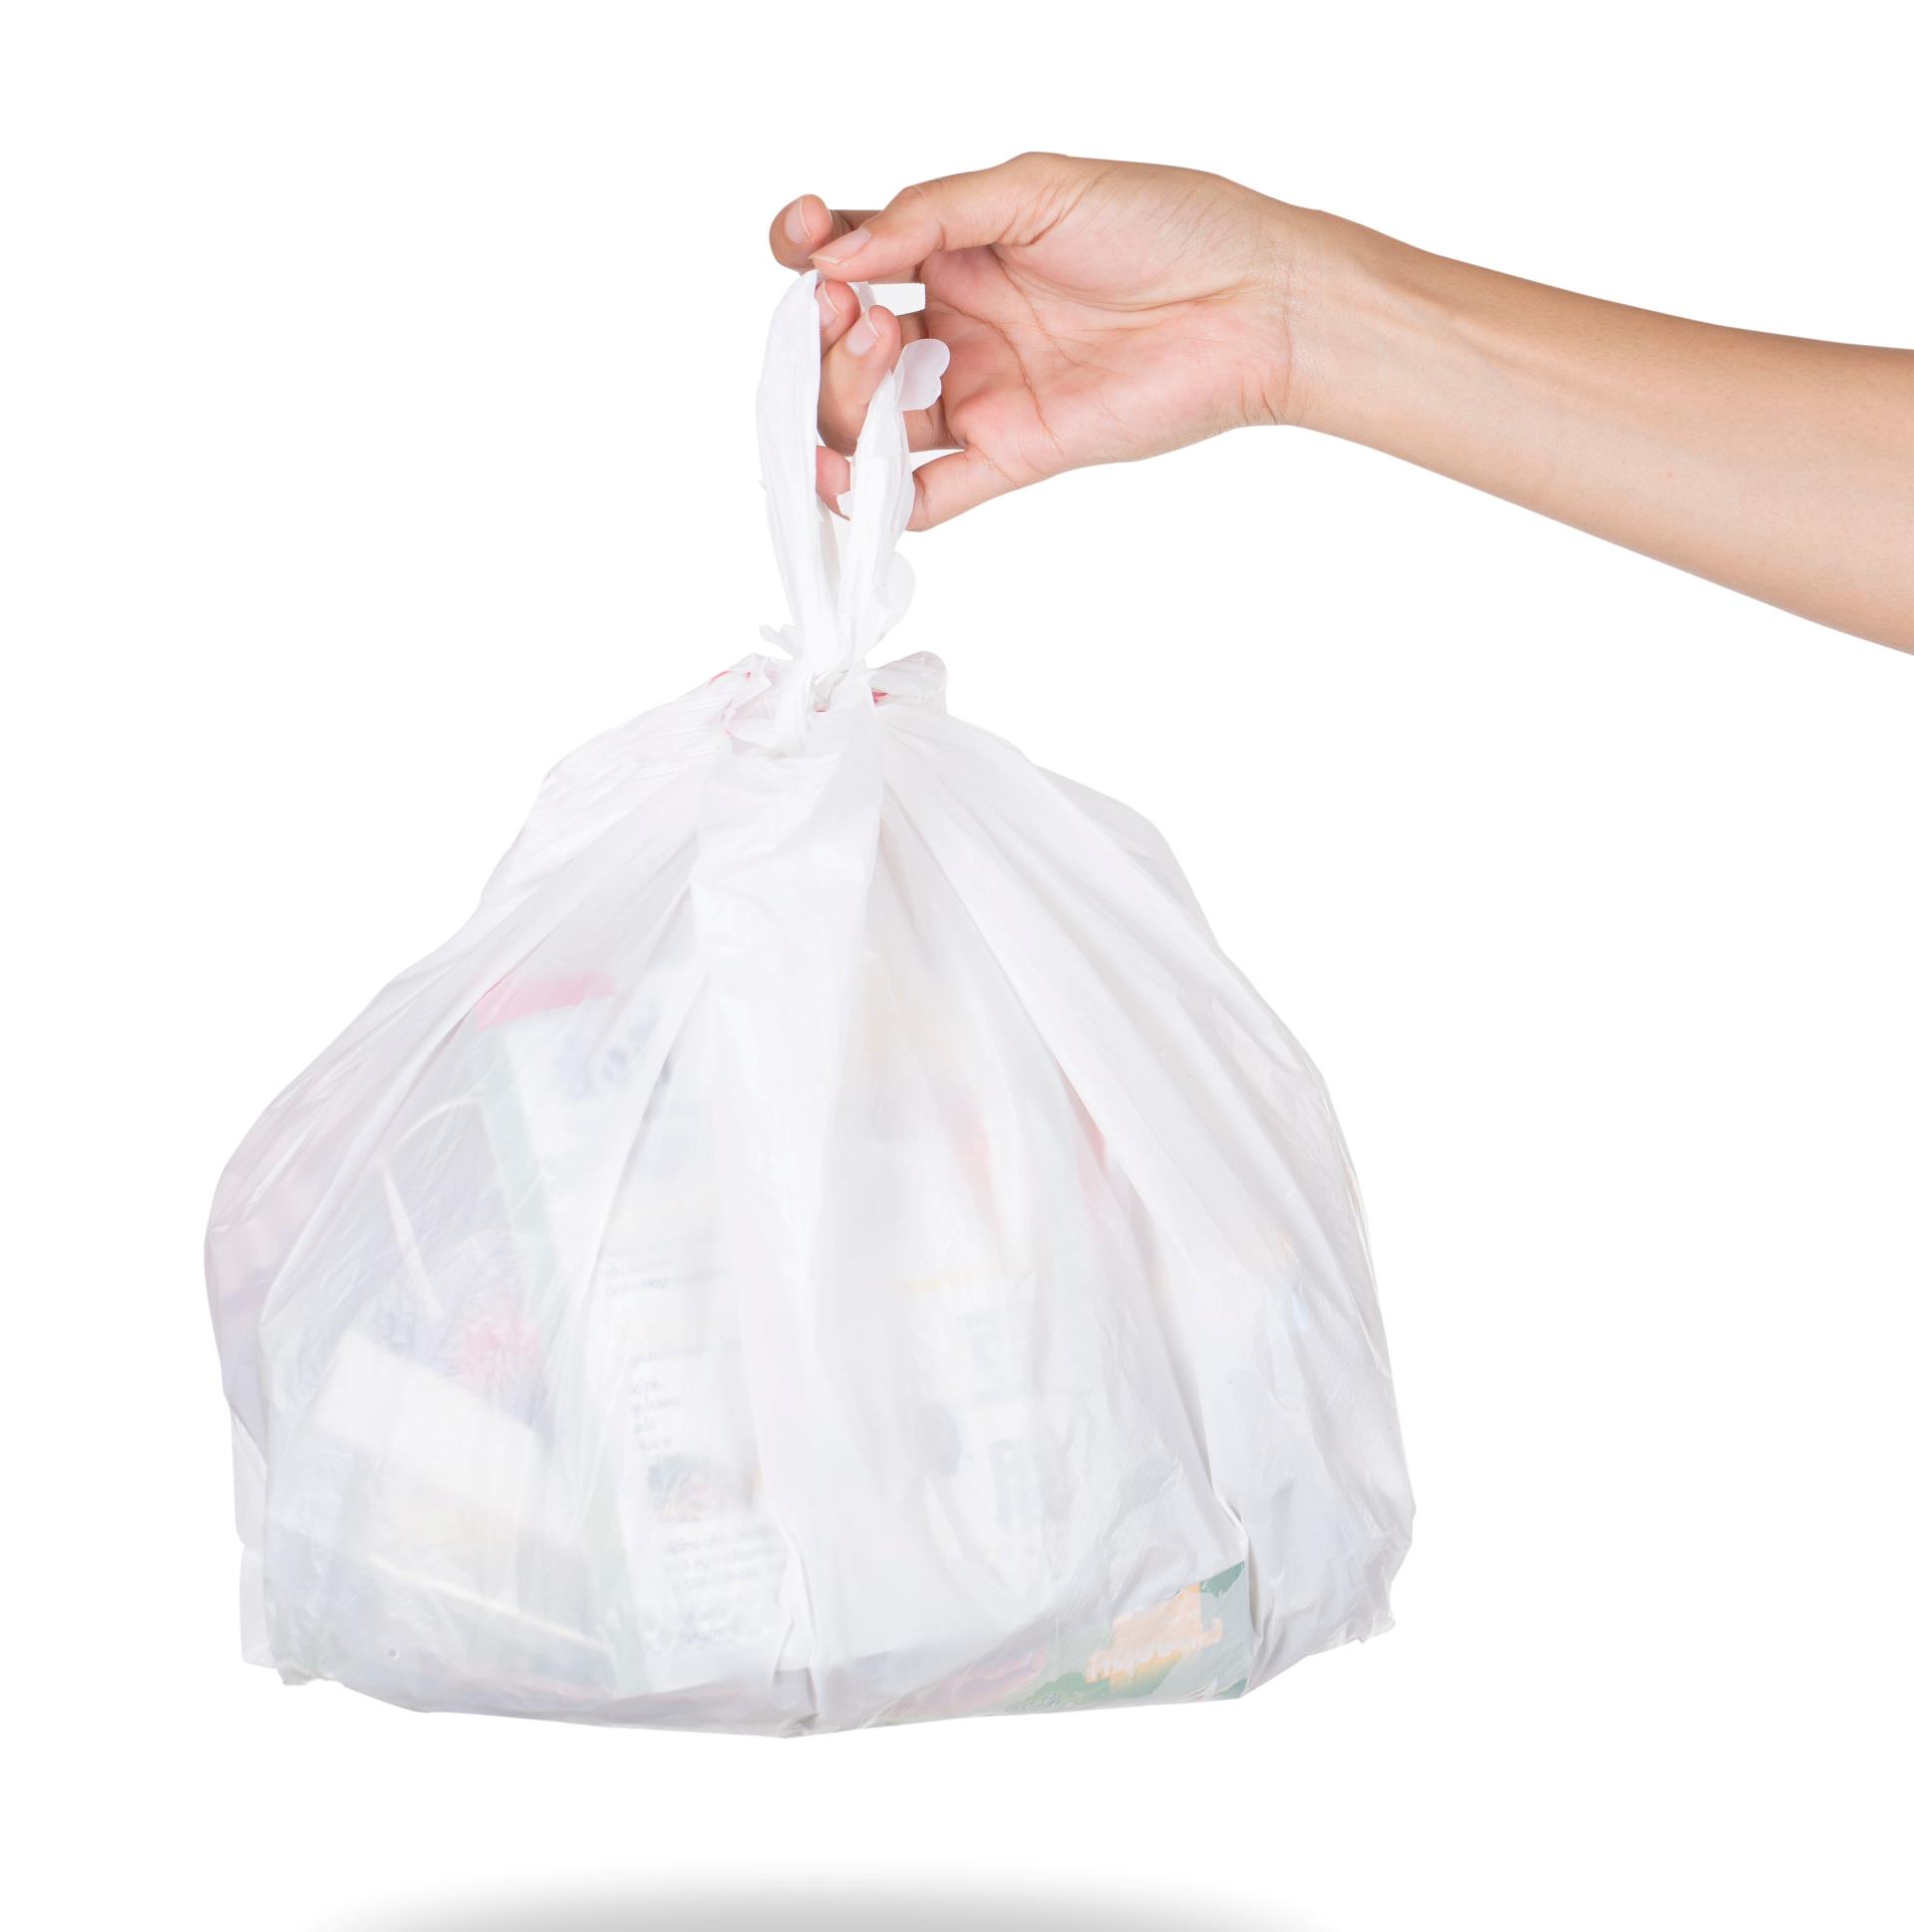 Her ser man et billedet af en hvid affaldspose med en knude i toppen. En hånd holder posen. Man ser hånd og underarm. Baggrunden er helt hvid.